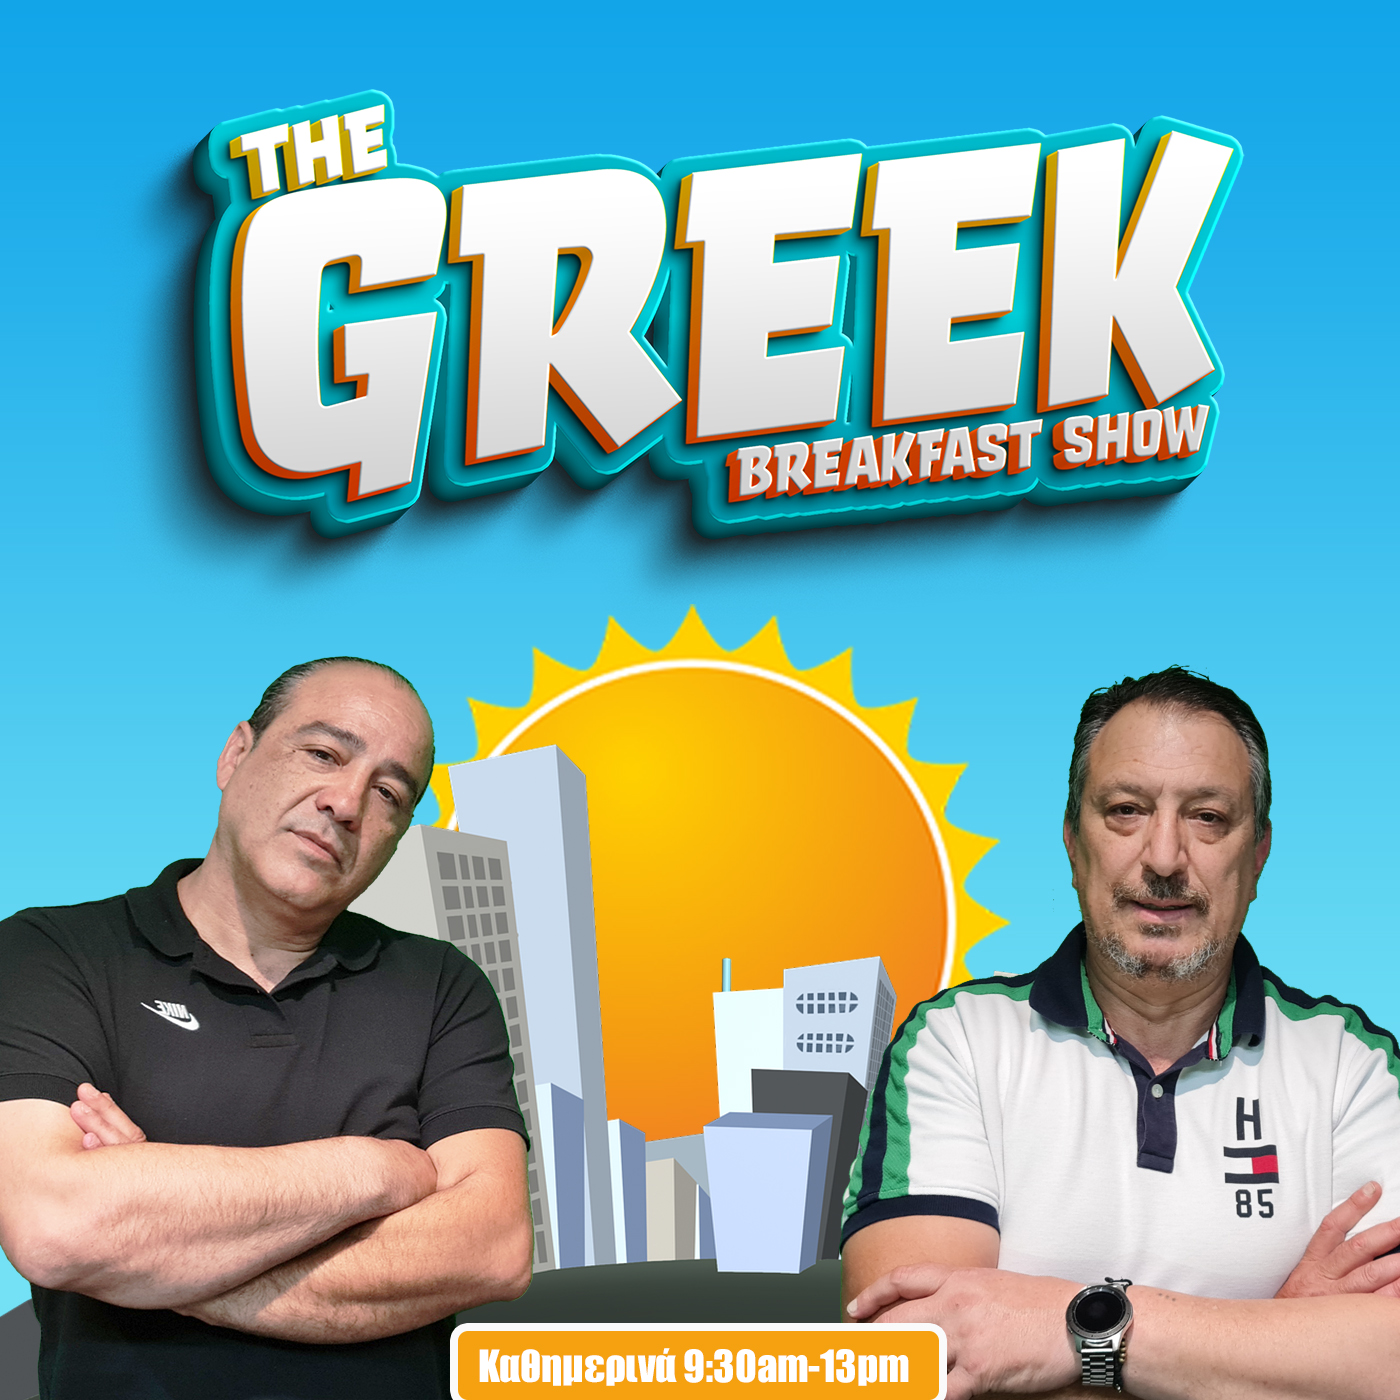 THE GREEK BREAKFAST SHOW